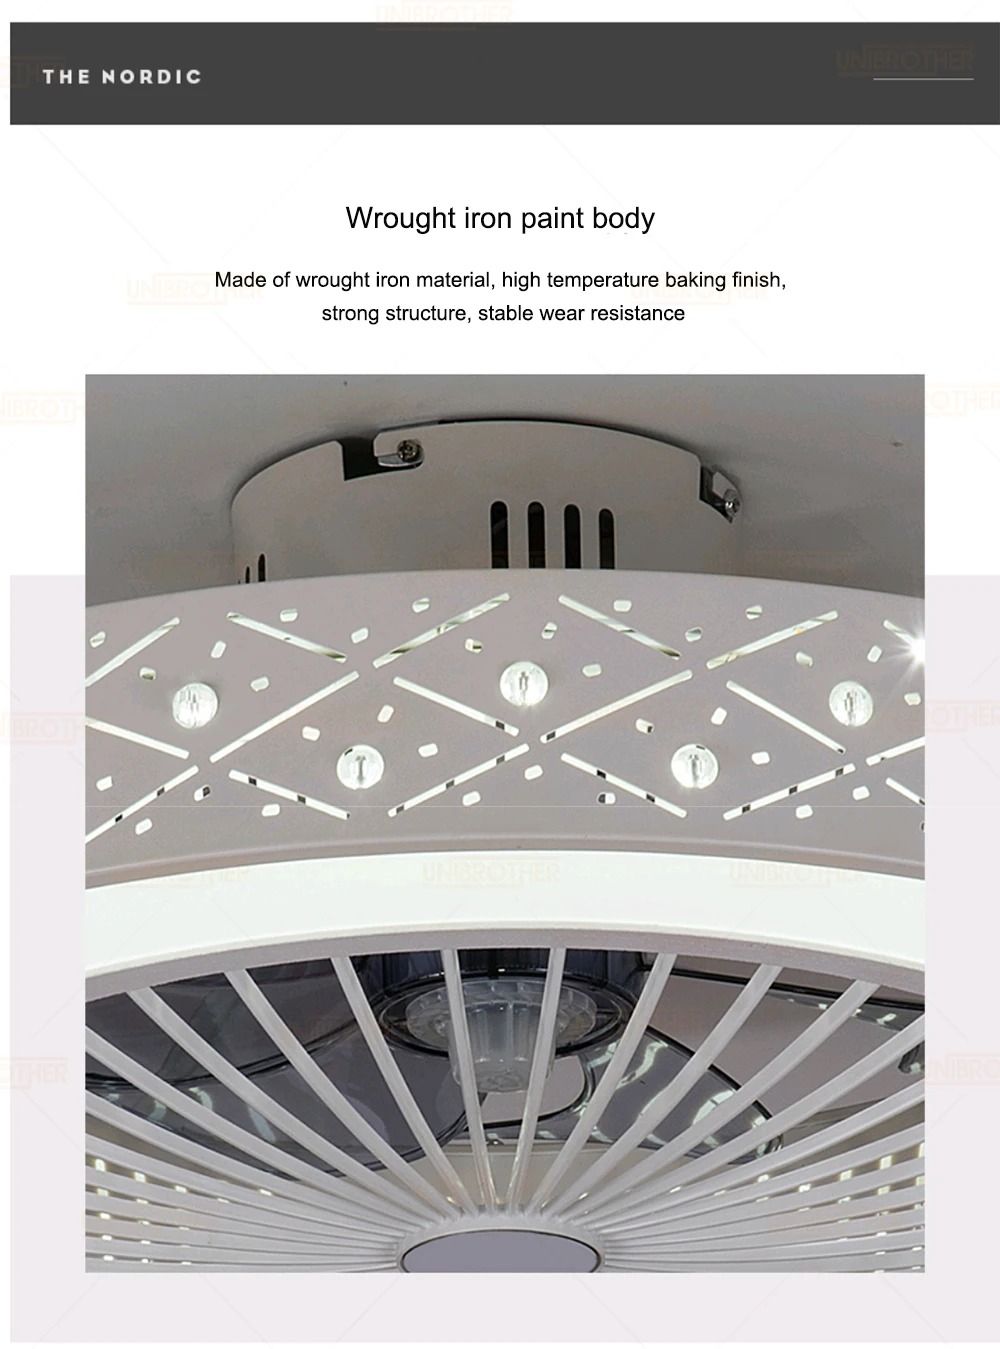 21 дюймов потолочный вентилятор смарт-пульт дистанционного управления с подсветкой в помещении домашнего декора 55 см Круглый Современные потолочные люстры-вентиляторы